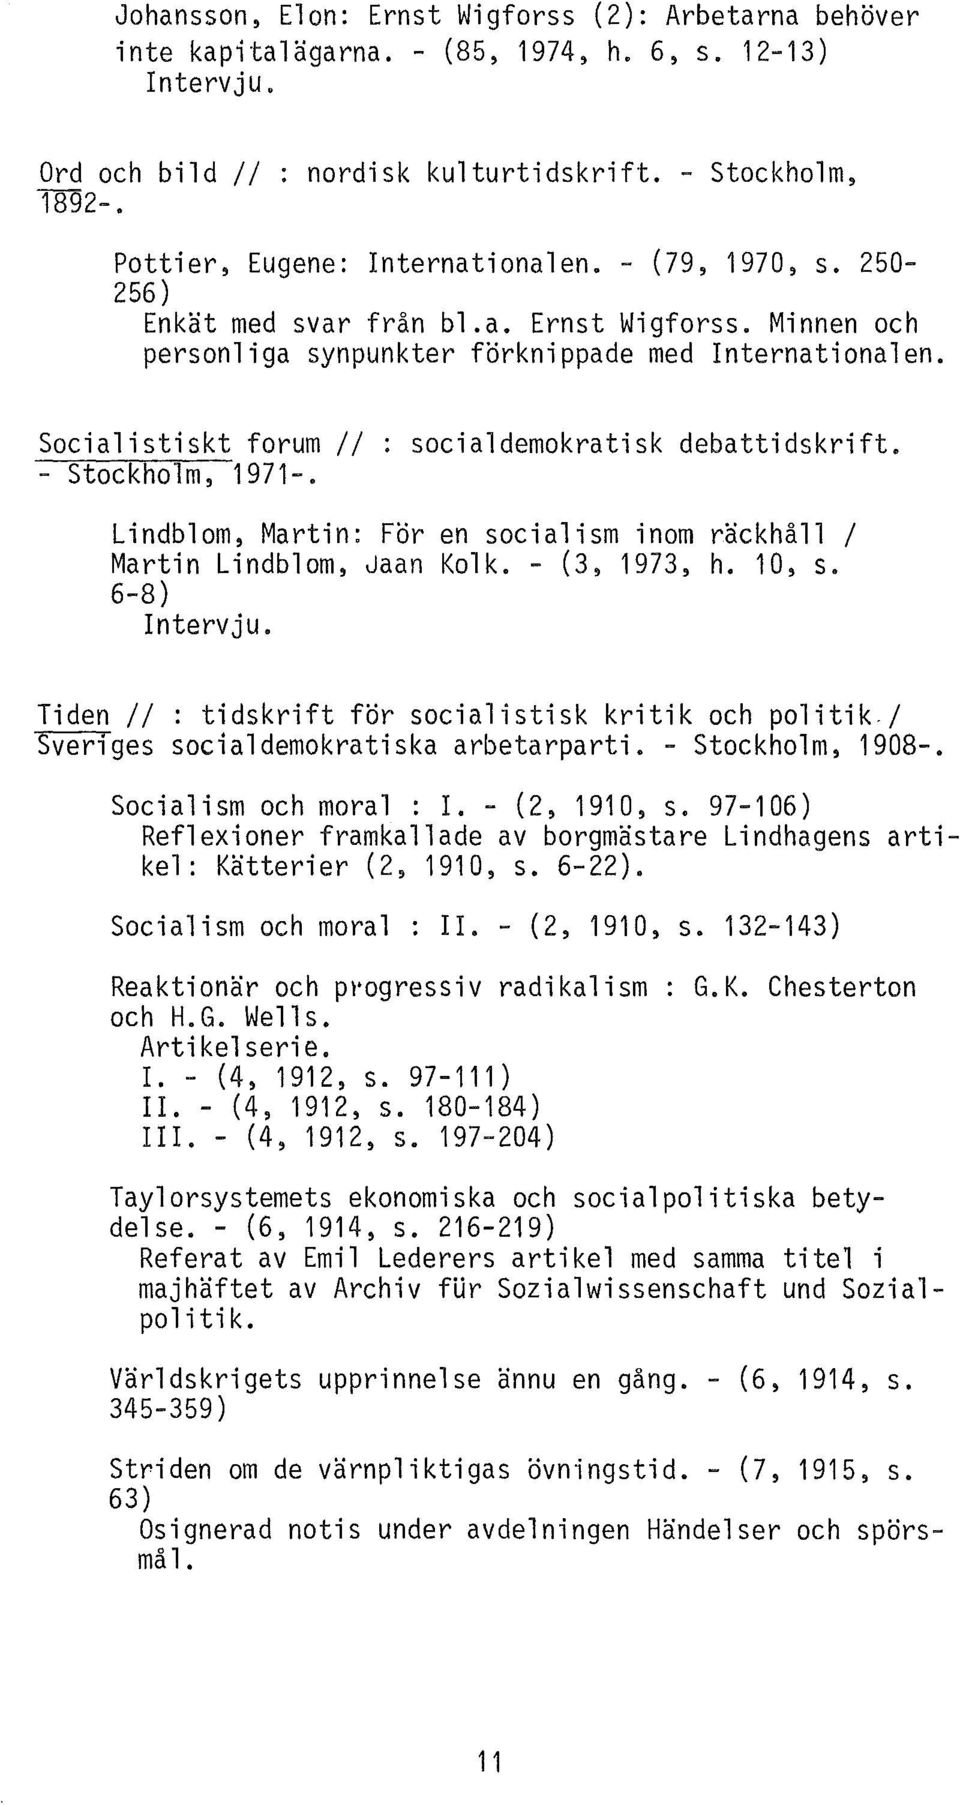 Socialistiskt forum// : socialdemokratisk debattidskrift. - Stockholm, 1971-. Lindblom~ Martin: För en socialism inom räckhåll l Martin Lindblom~ Jaan Kolk. - (3, 1973, h. 10, s. 6-8) Intervju.